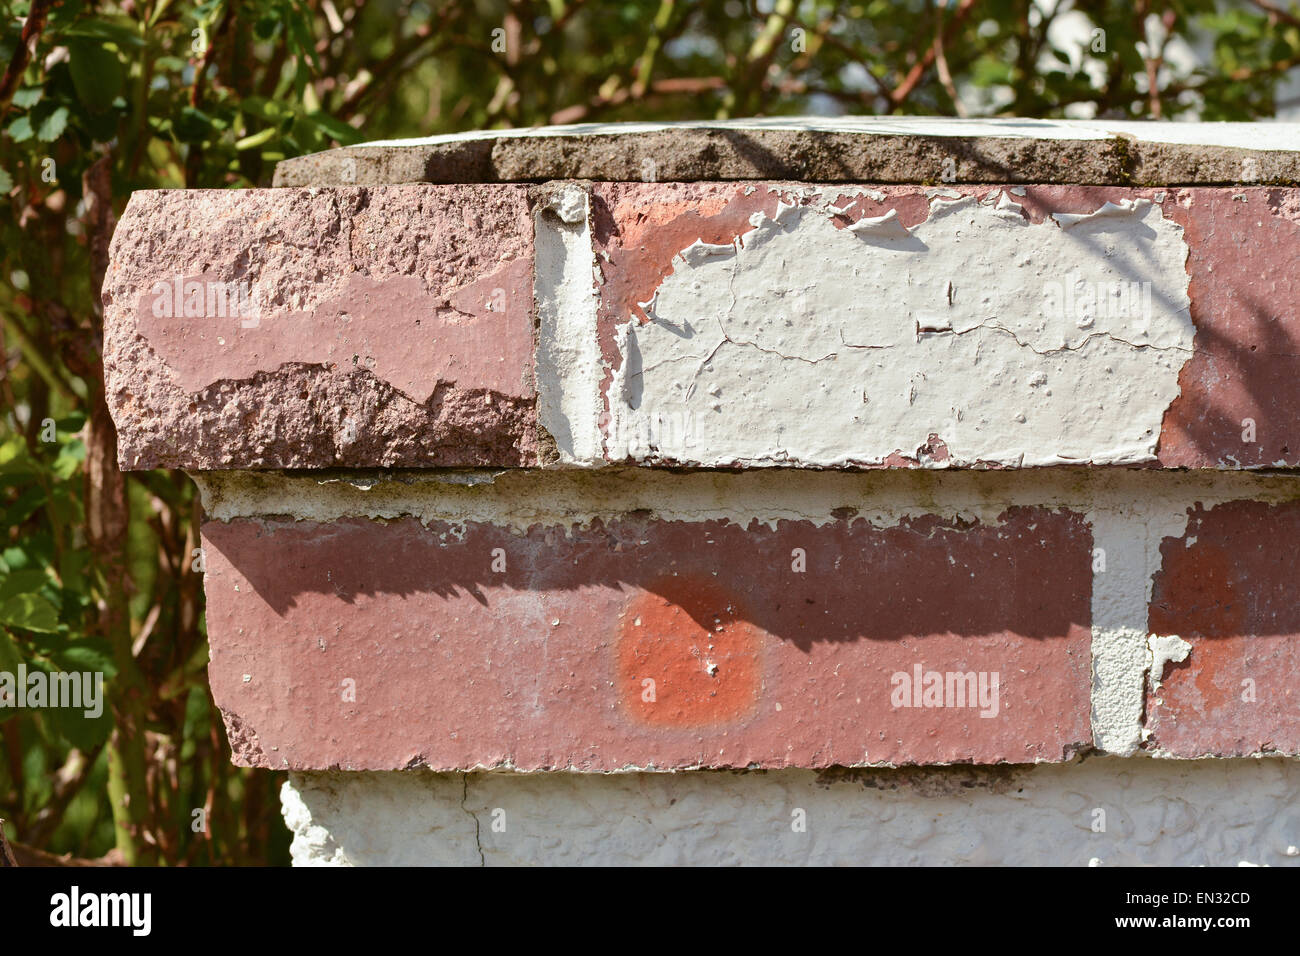 Écaille de peinture dues aux intempéries - rouge brique mur jardin barrière cap nécessitant une maintenance et peinture Banque D'Images